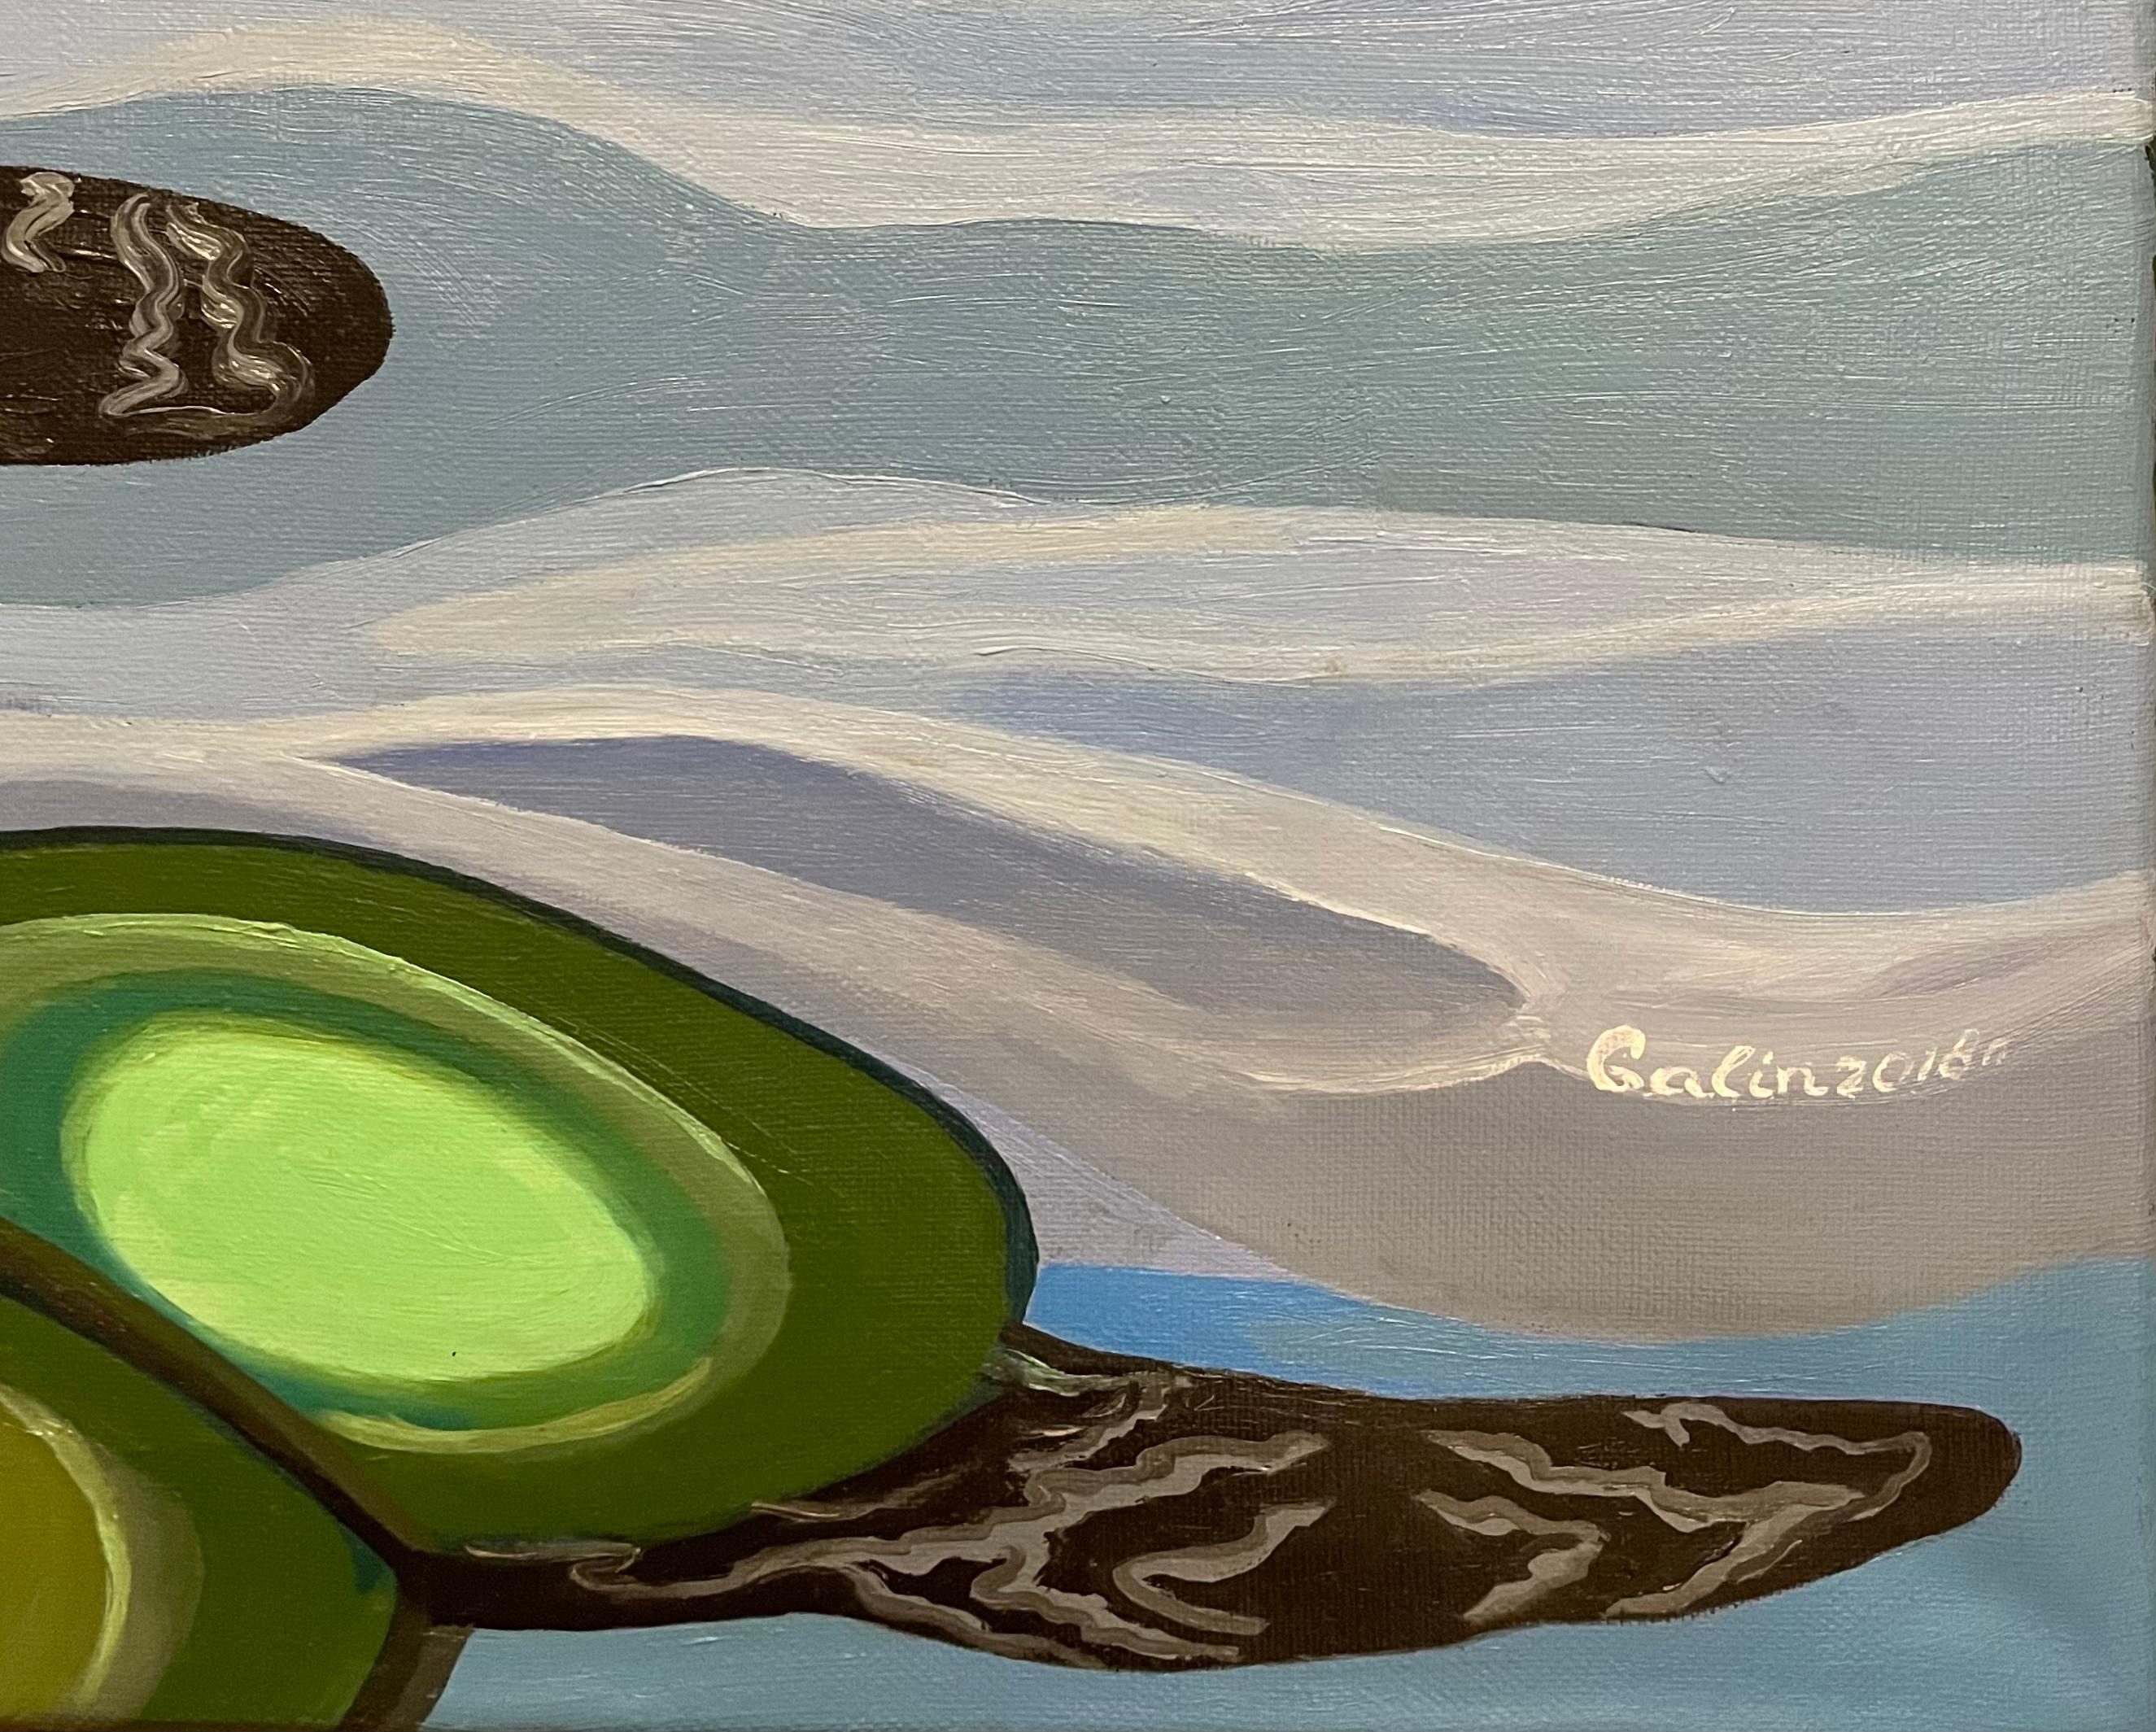 Un rêve dans une peinture abstraite, réalisée en bleu, vert, marron et noir - Noir Landscape Painting par Galin R